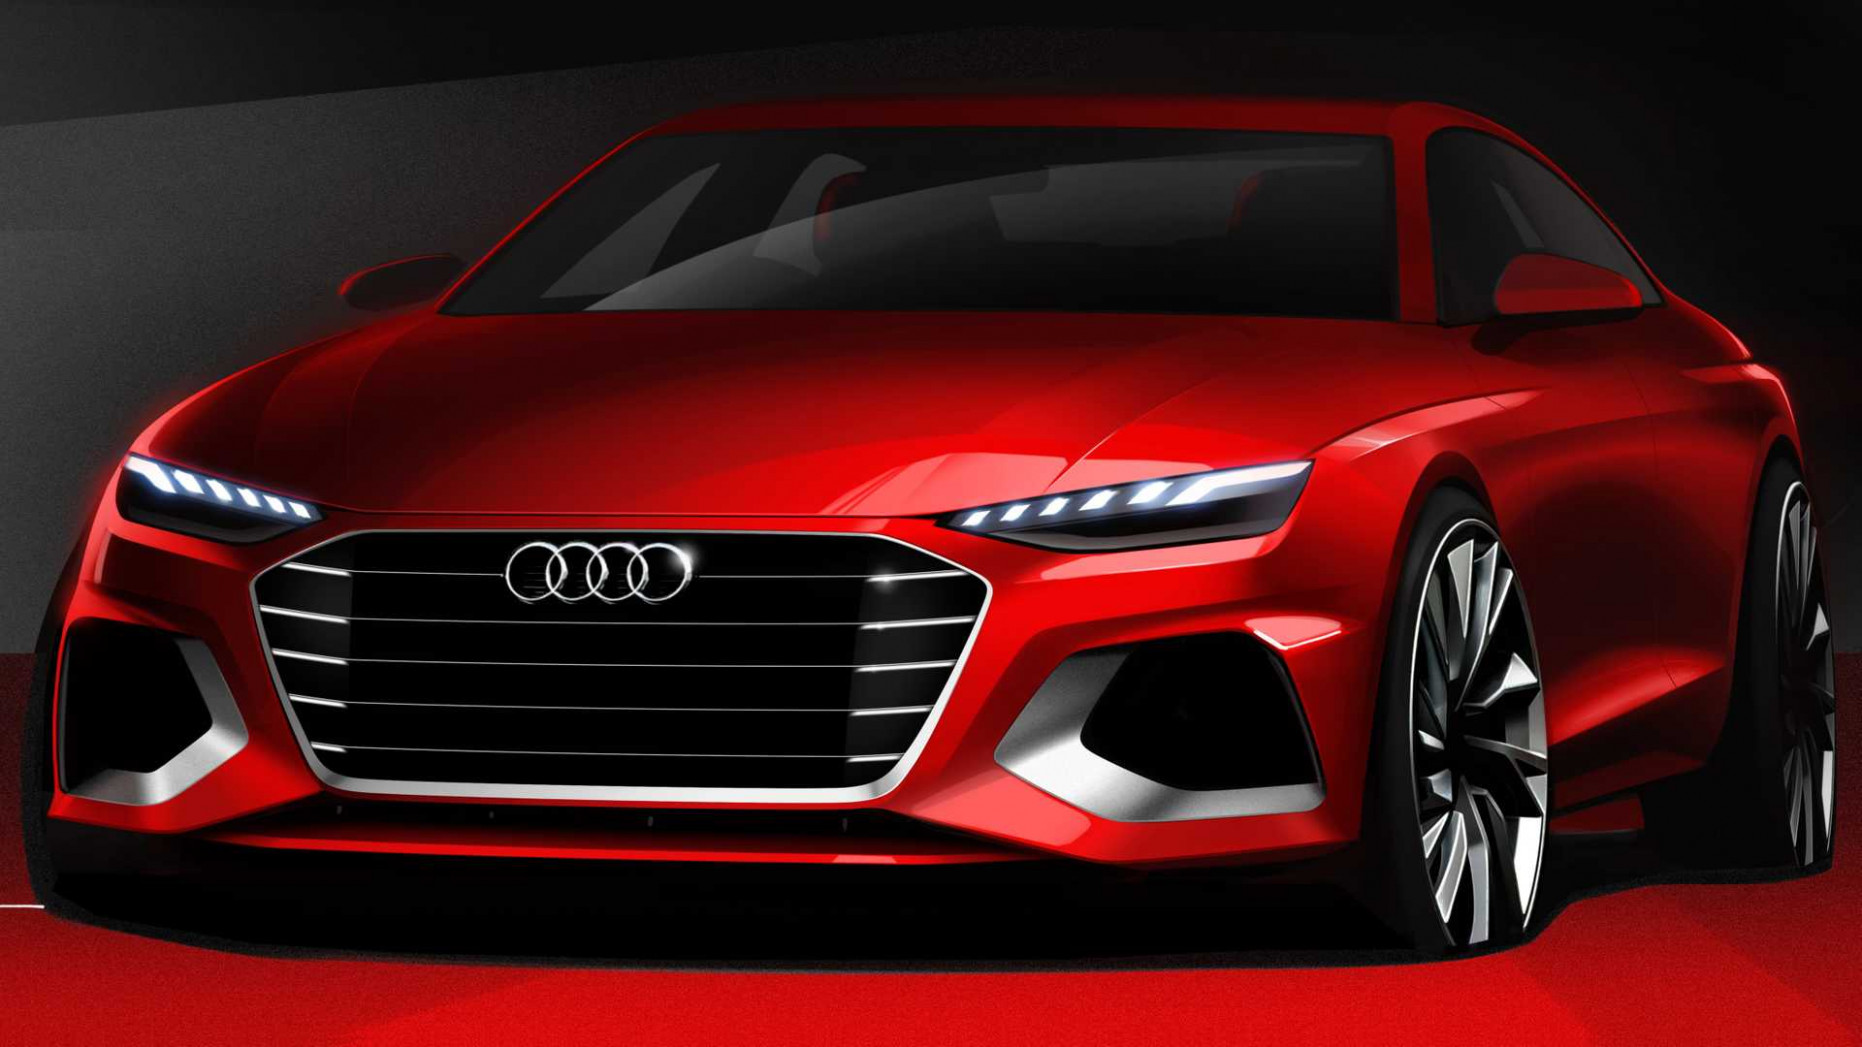 Rumors 2022 Audi S6 - Cars Review : Cars Review